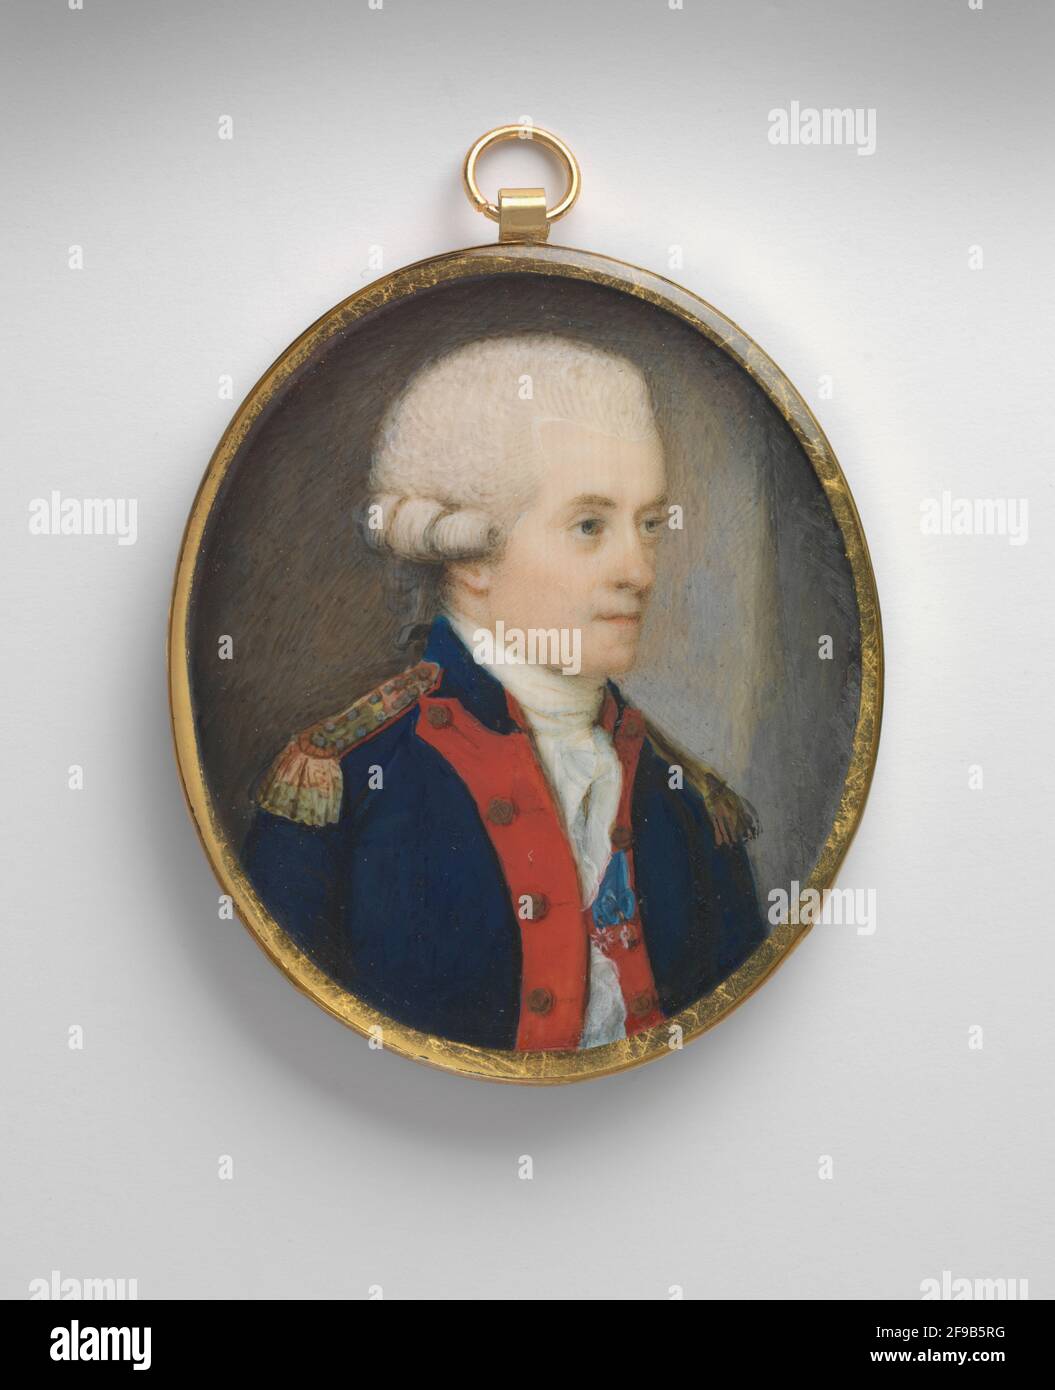 John Paul Jones, 1780. Stock Photo